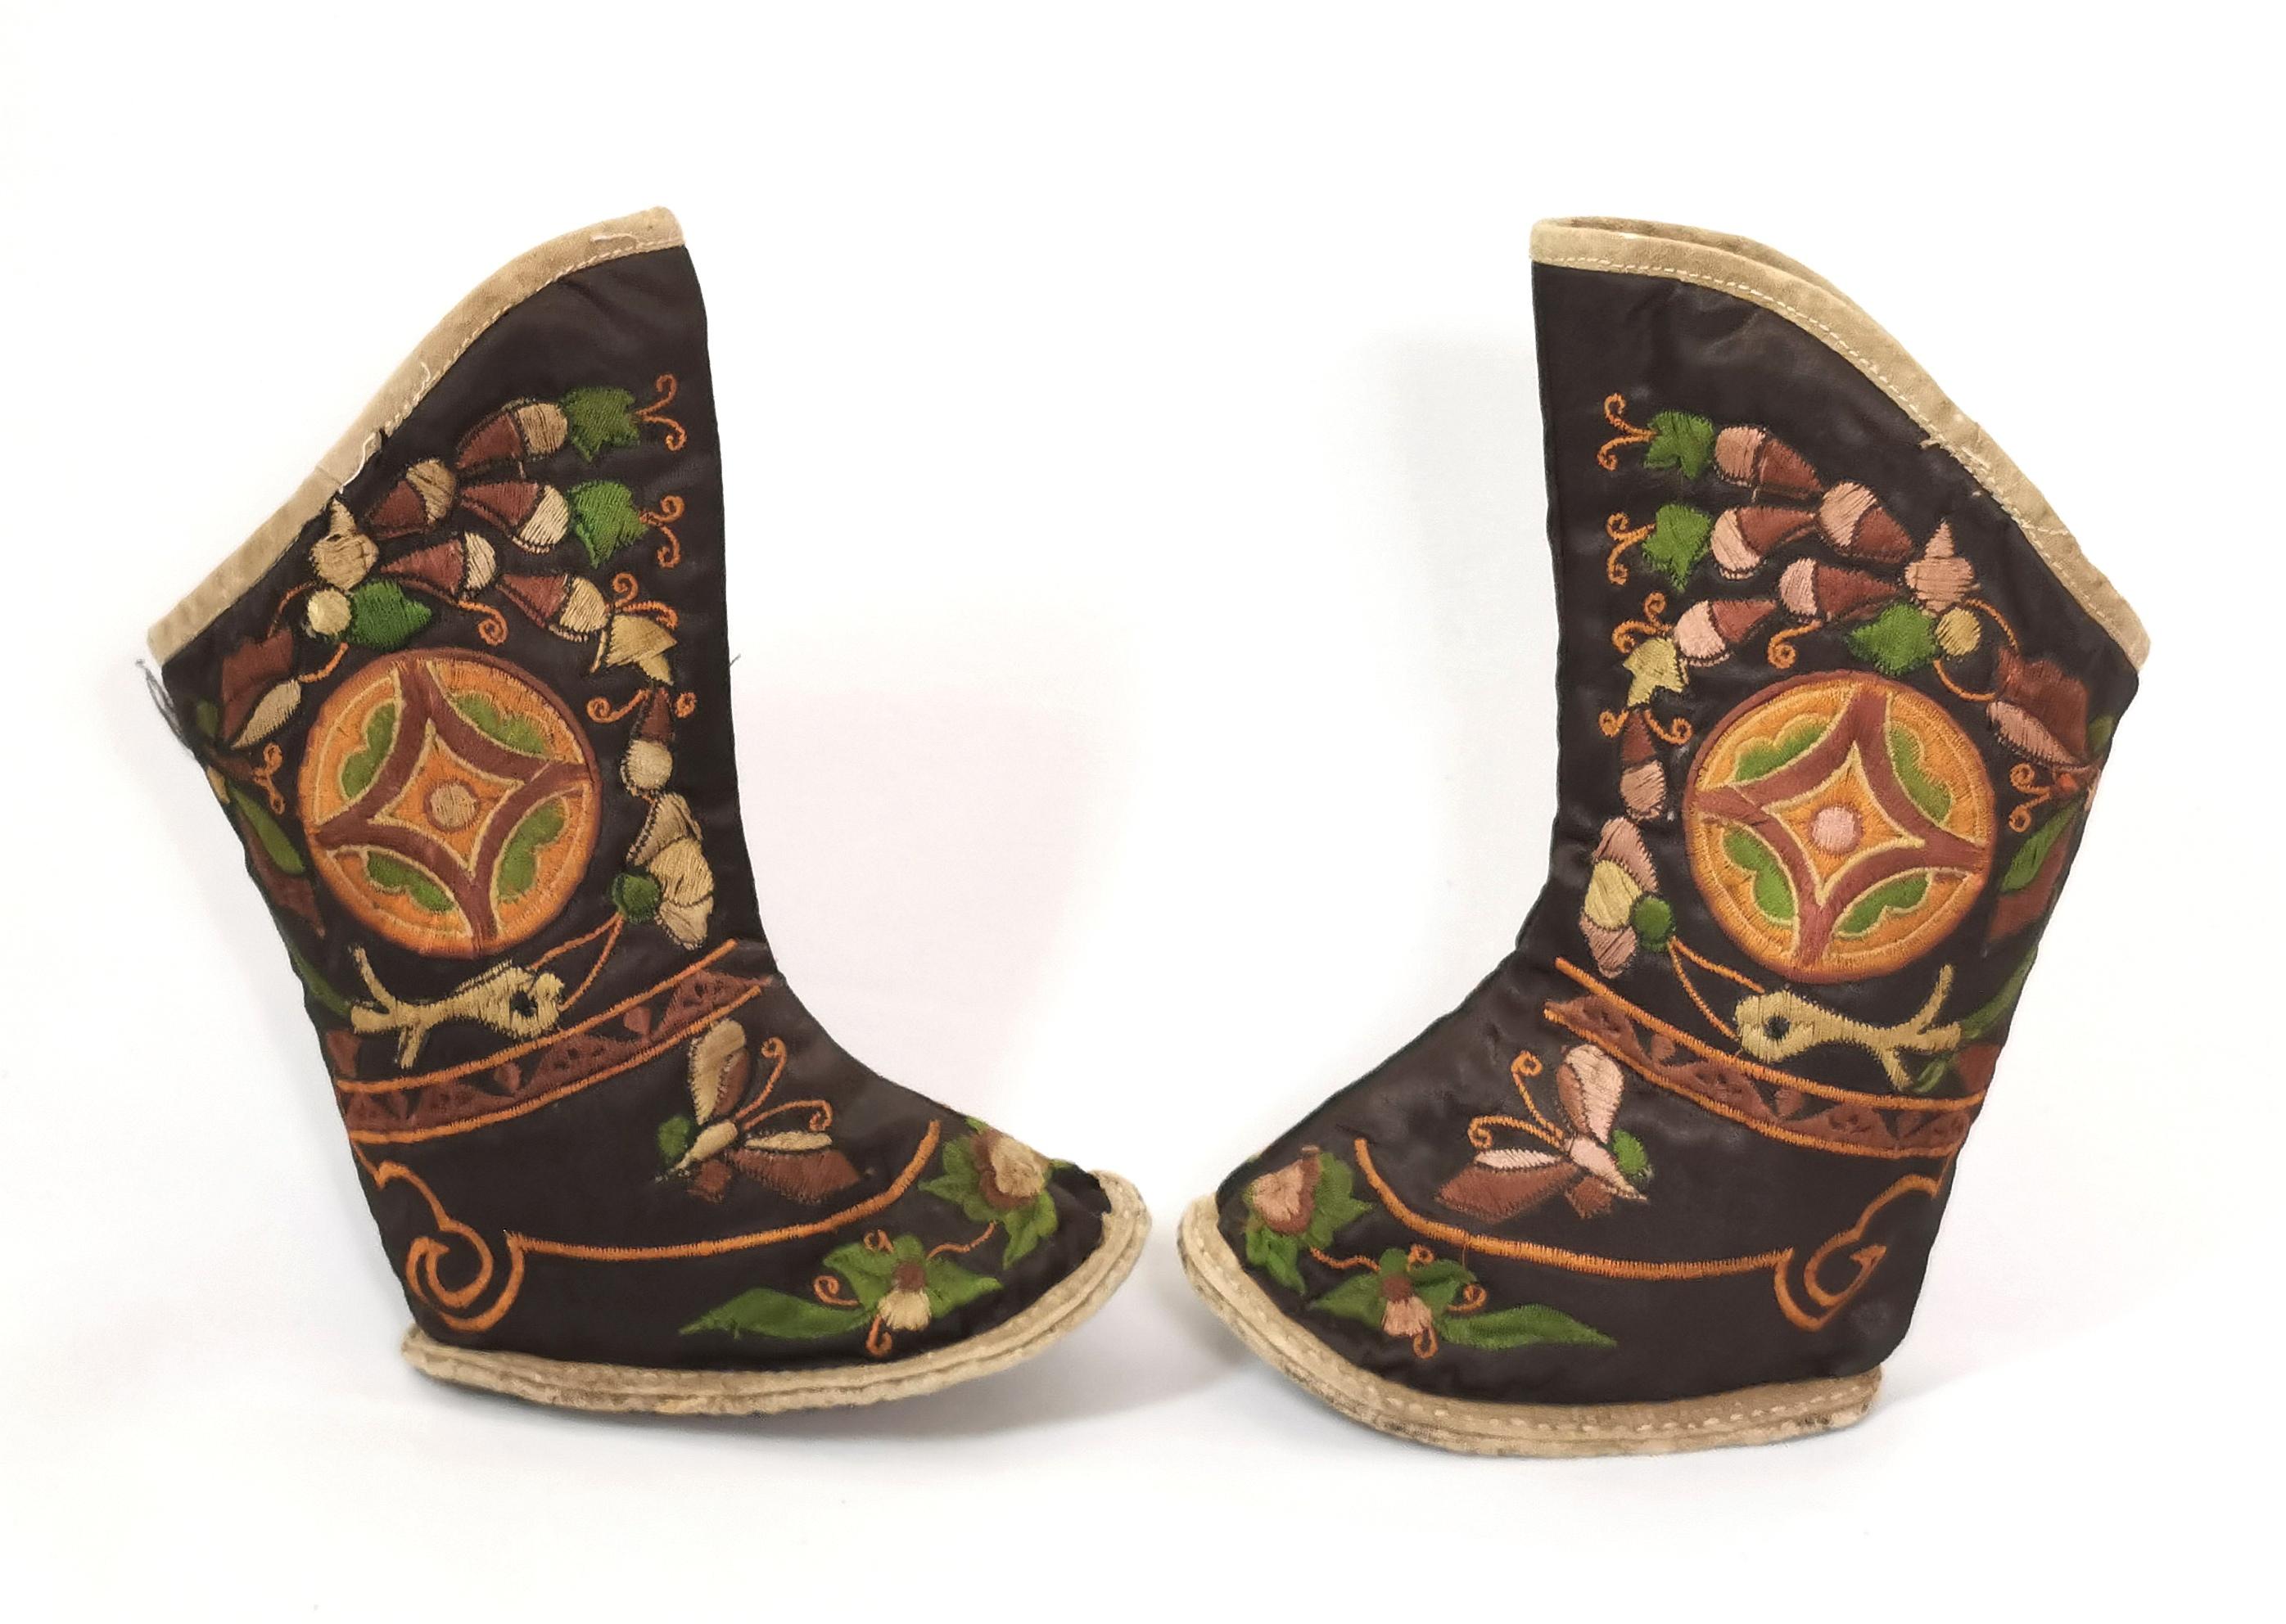 Une belle paire de bottes anciennes en soie brodée chinoise.

Ils sont parfaitement conçus avec des feuillages et des papillons brodés à la main sur un fond de soie brun chocolat.

Elles ont des semelles en tissu renforcé et sont légèrement plus